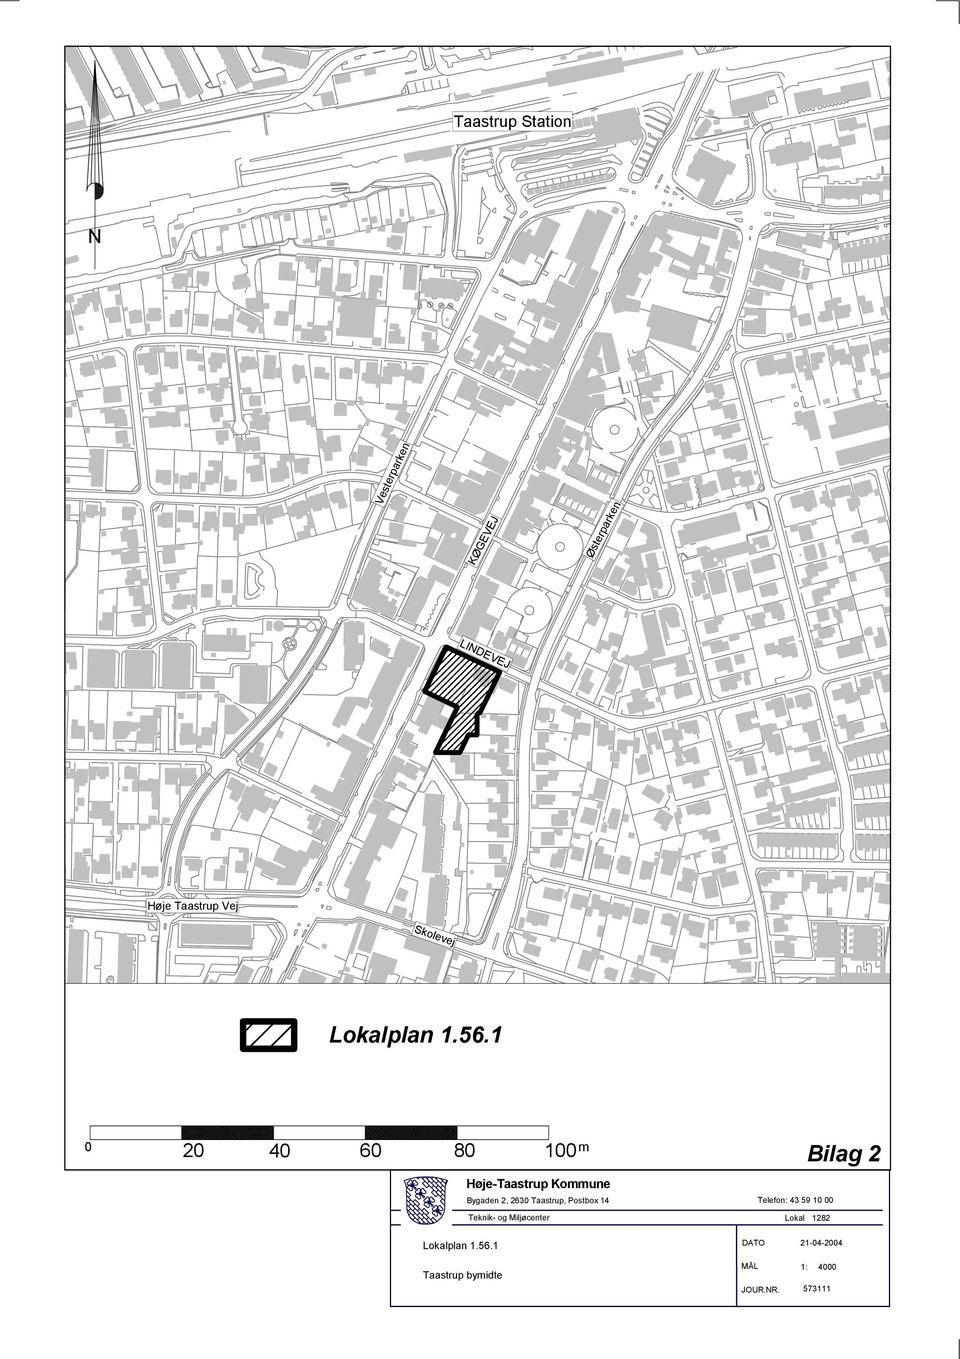 1 0 20 40 60 80 100 m Høje-Taastrup Kommune Bygaden 2, 2630 Taastrup, Postbox 14